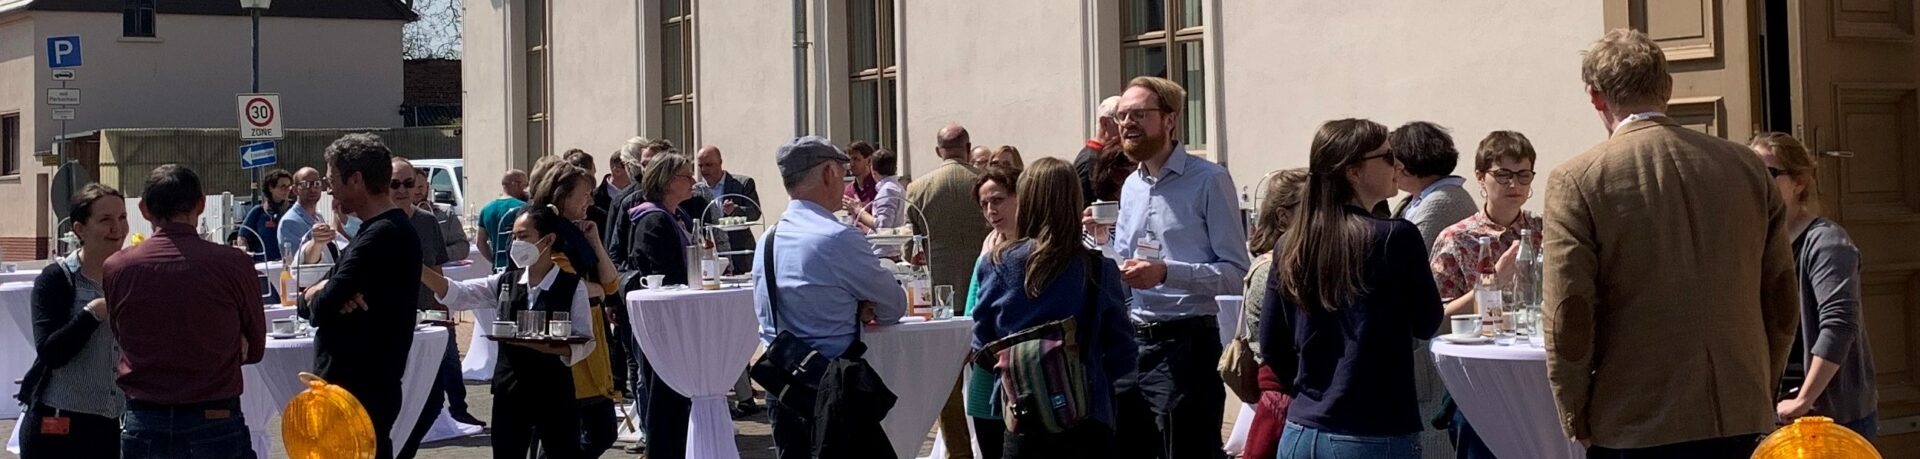 Erholsame Pausen bei feinem Catering und angeregten Gesprächen. Foto: Kulturstiftung Dessau-Wörlitz. 2022